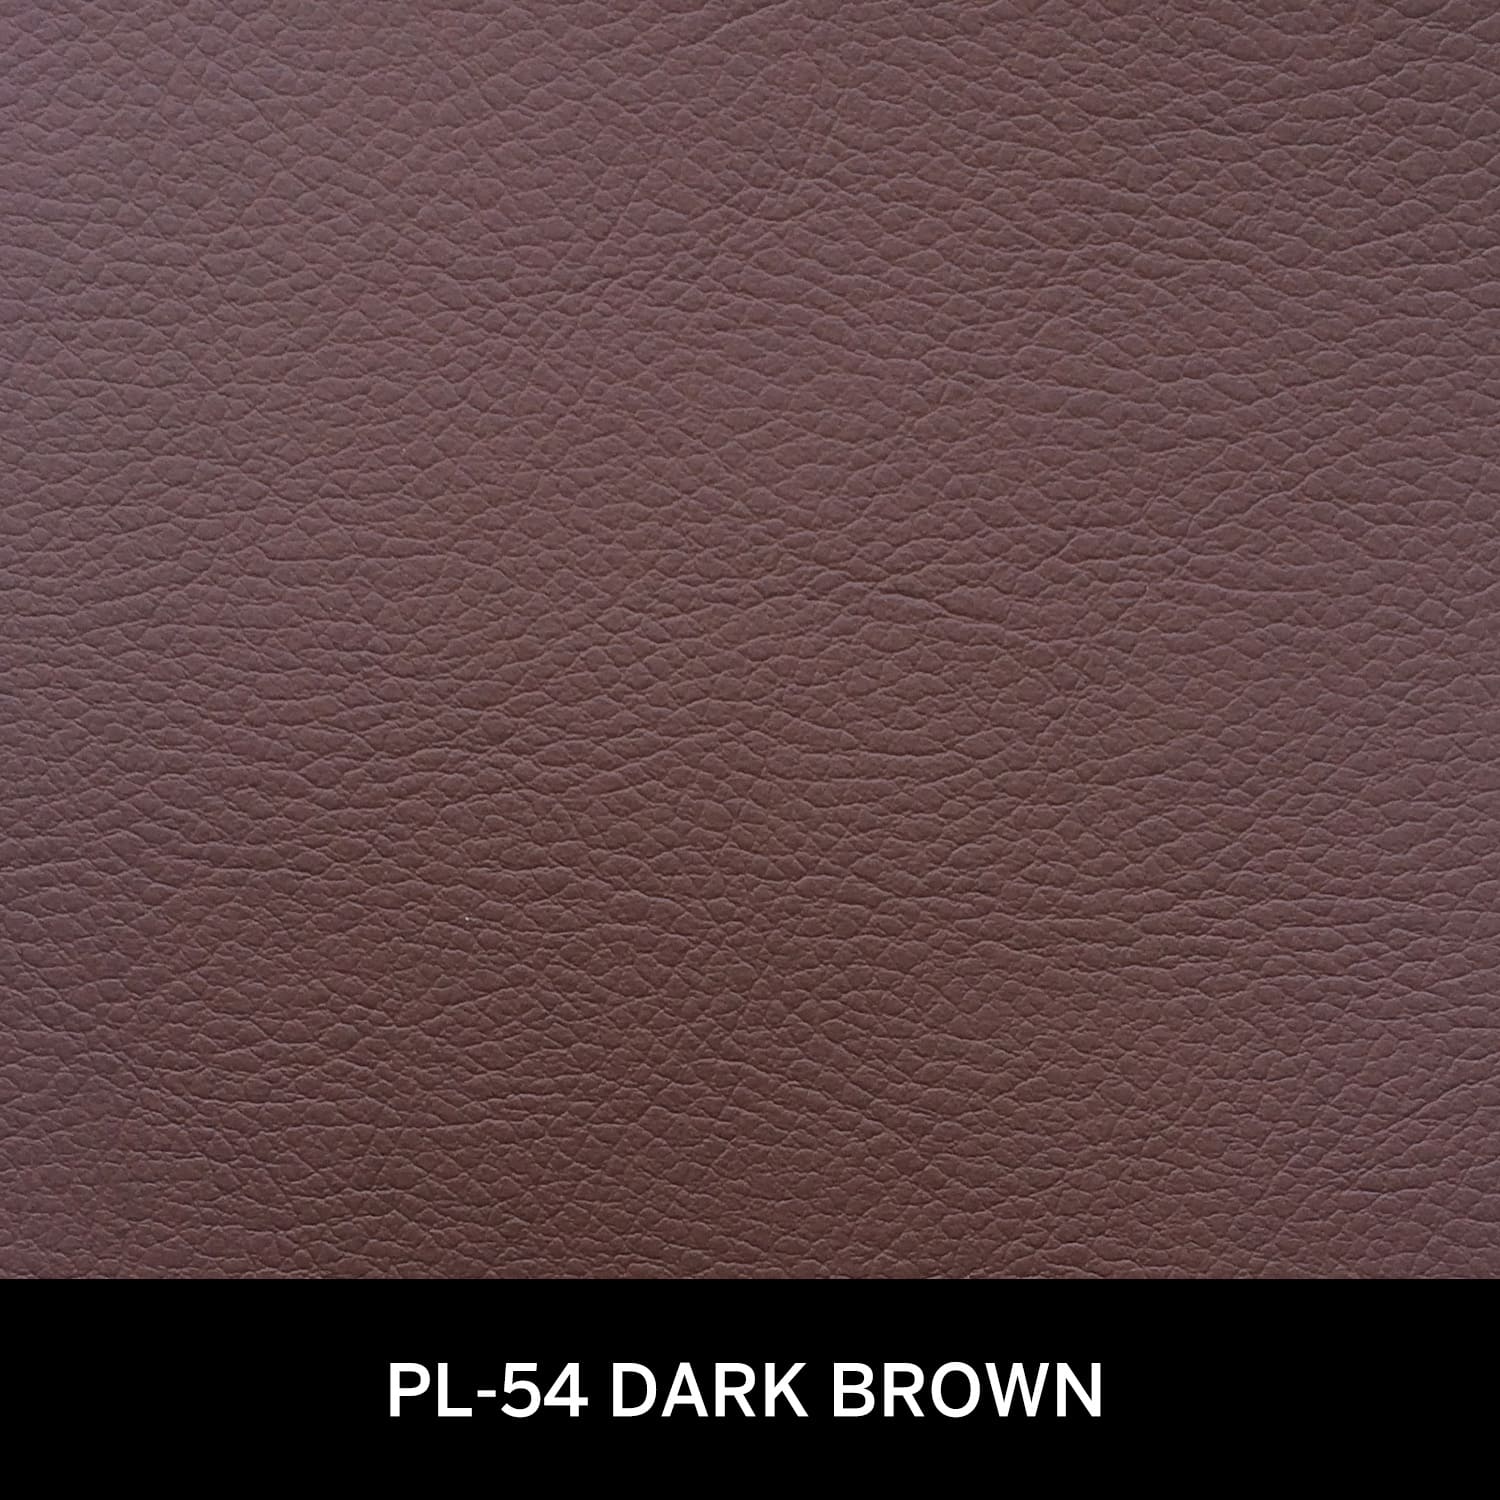 pl-54 dark brown